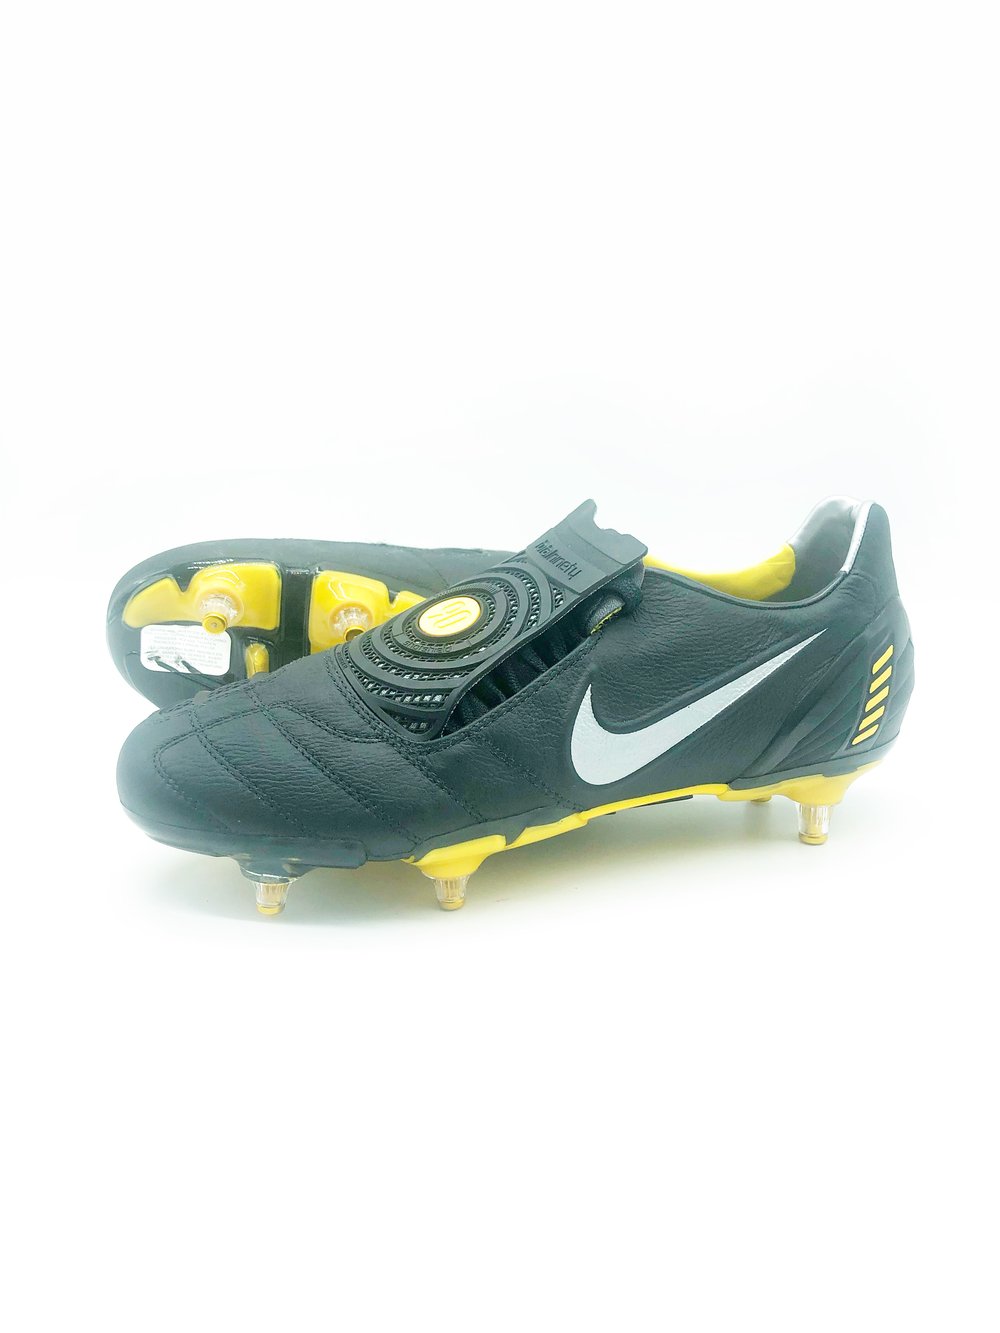 Image of Nike T90 laser Sg black yellow 